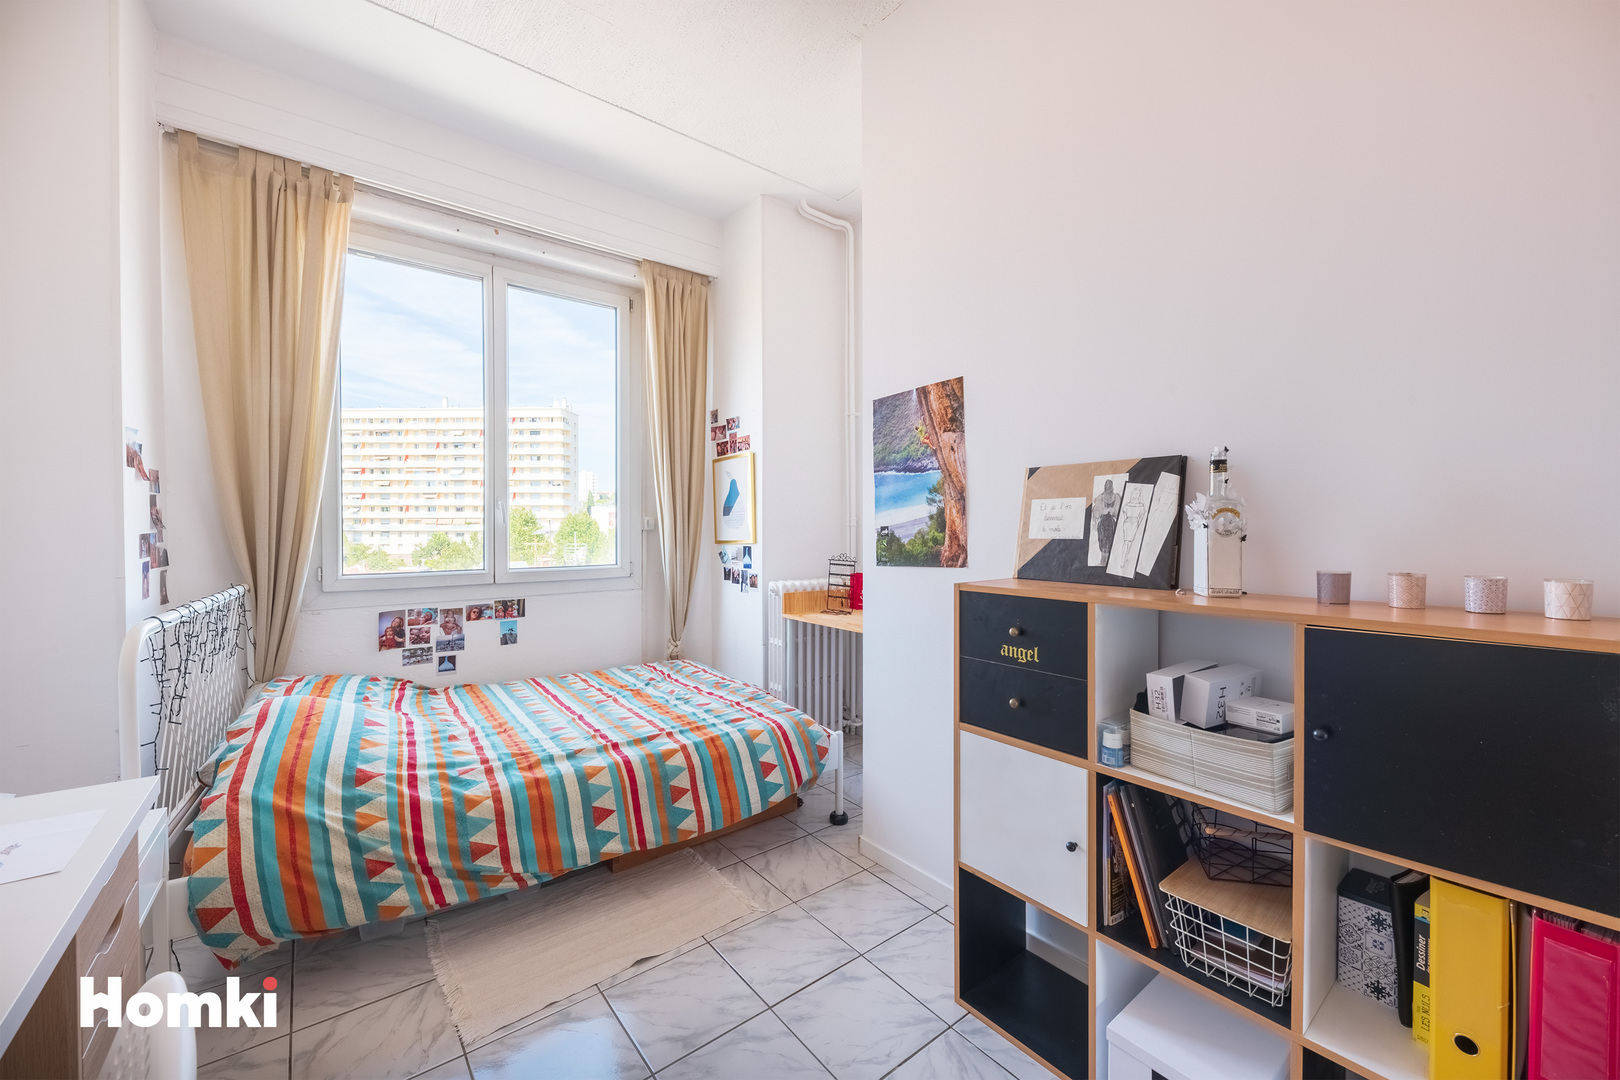 Homki - Vente Appartement  de 59.0 m² à Marseille 13005